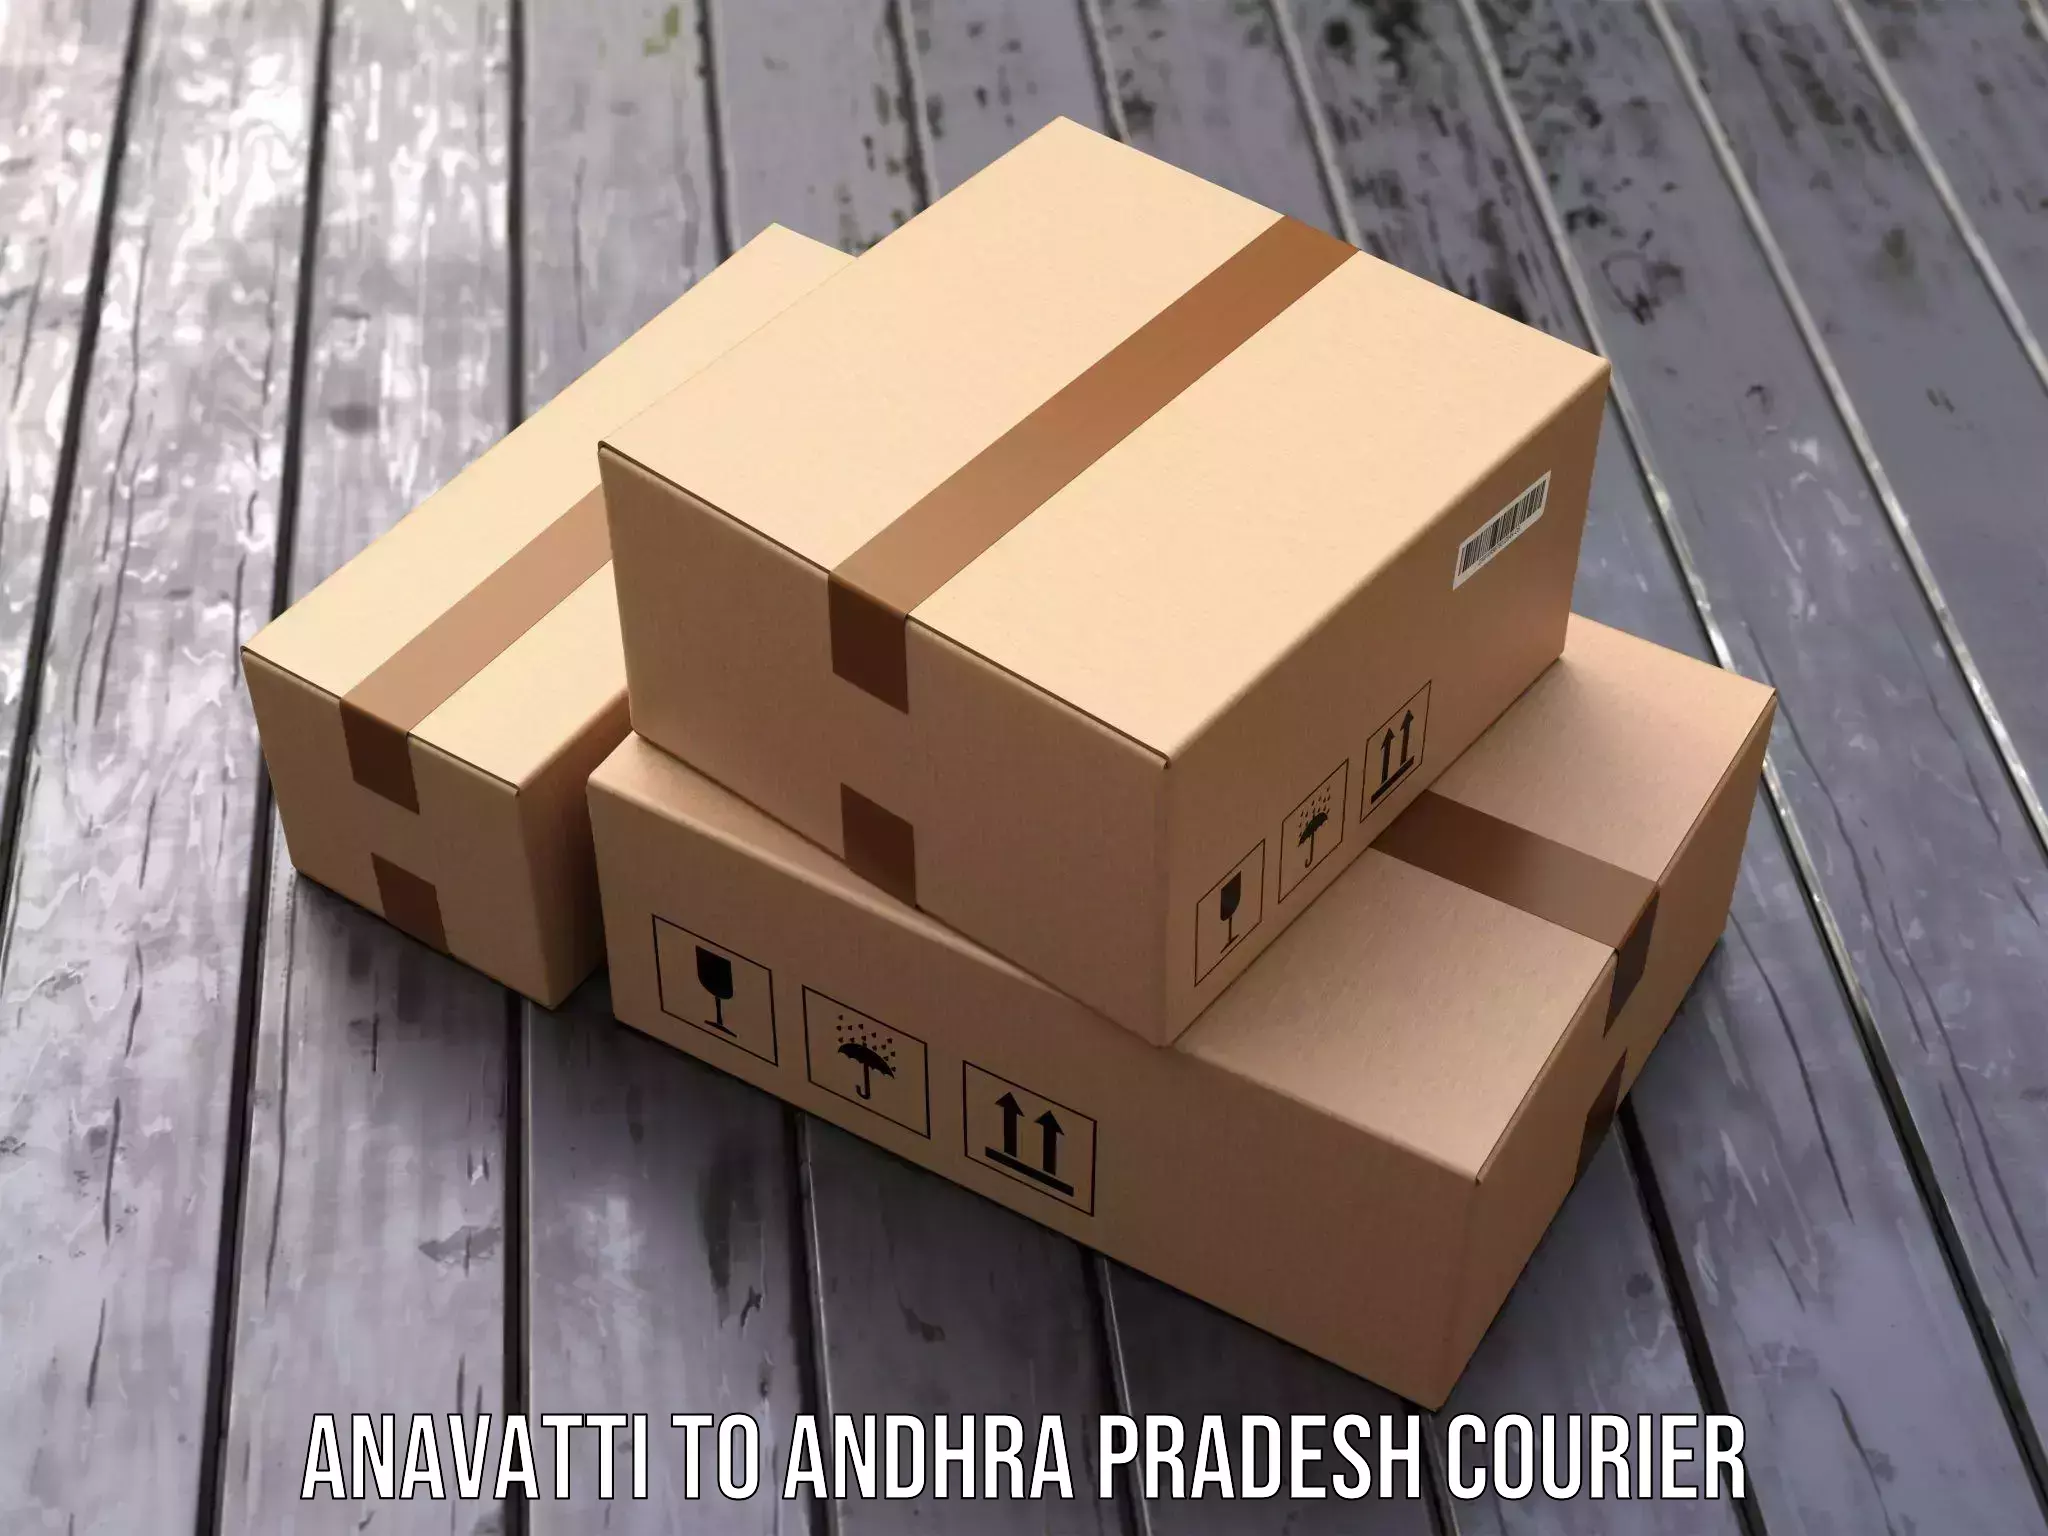 Modern courier technology Anavatti to Veldurthi